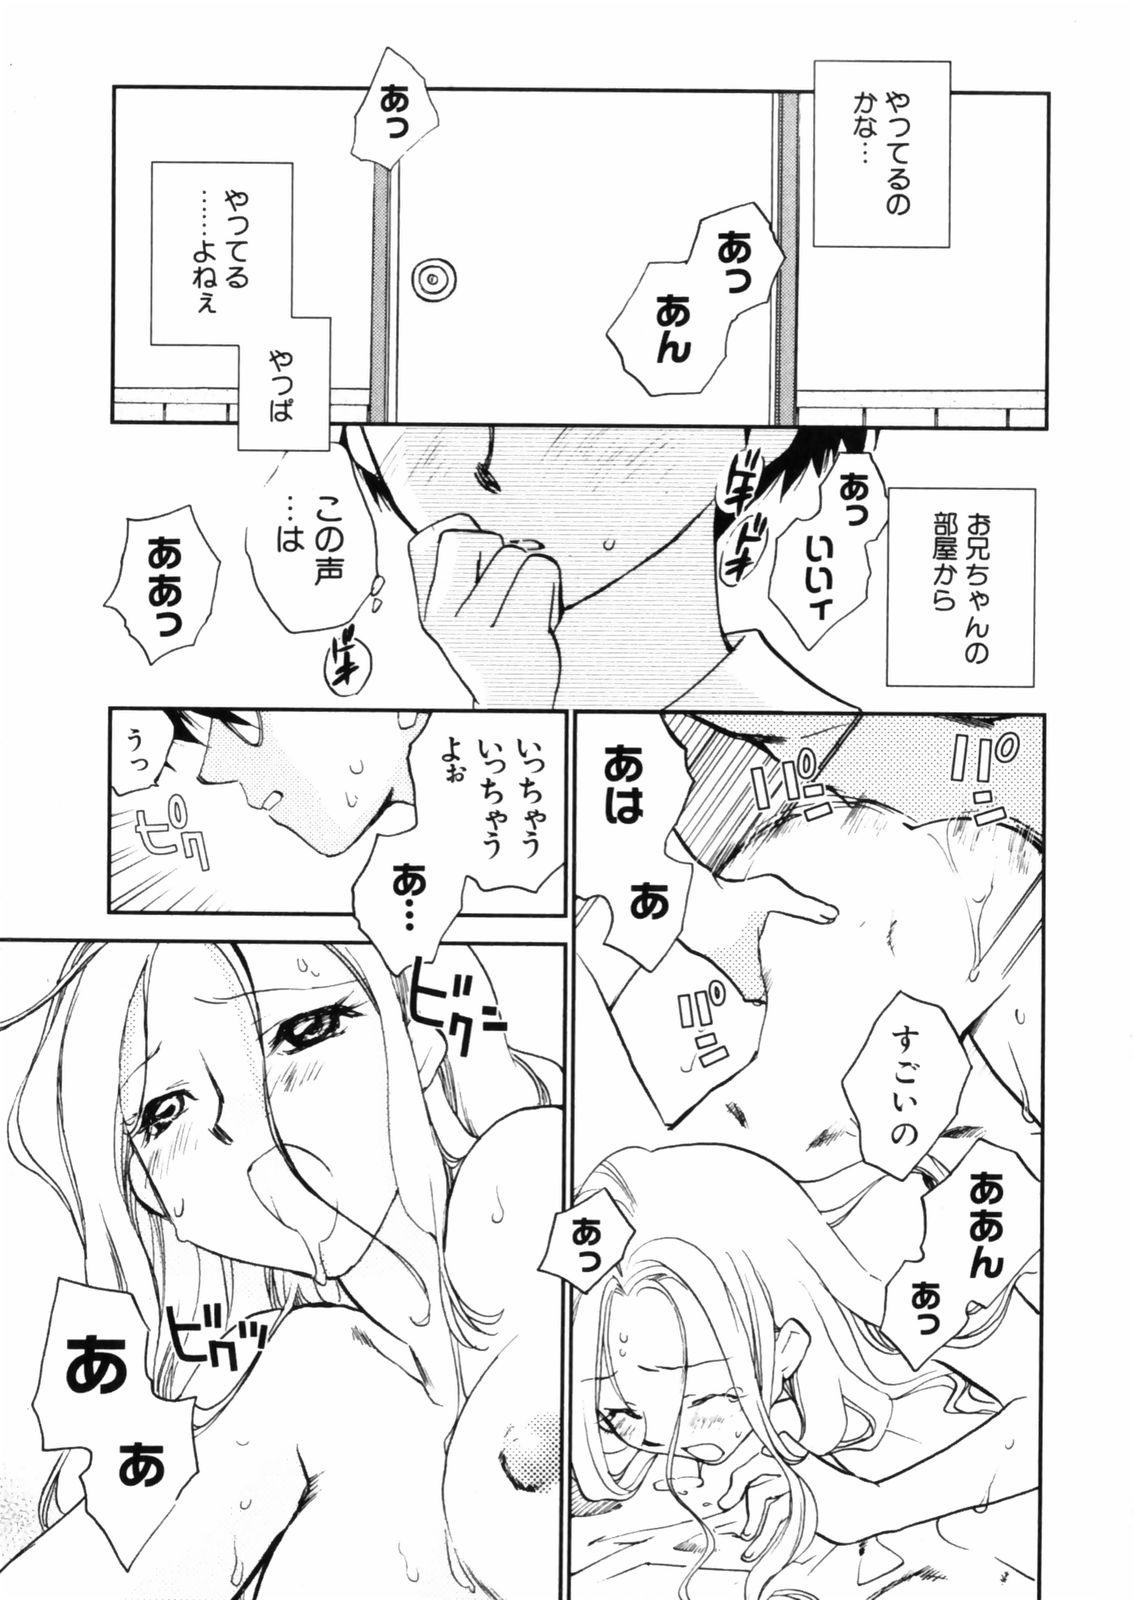 [Okano Ahiru] Hanasake ! Otome Juku (Otome Private Tutoring School) Vol.2 138